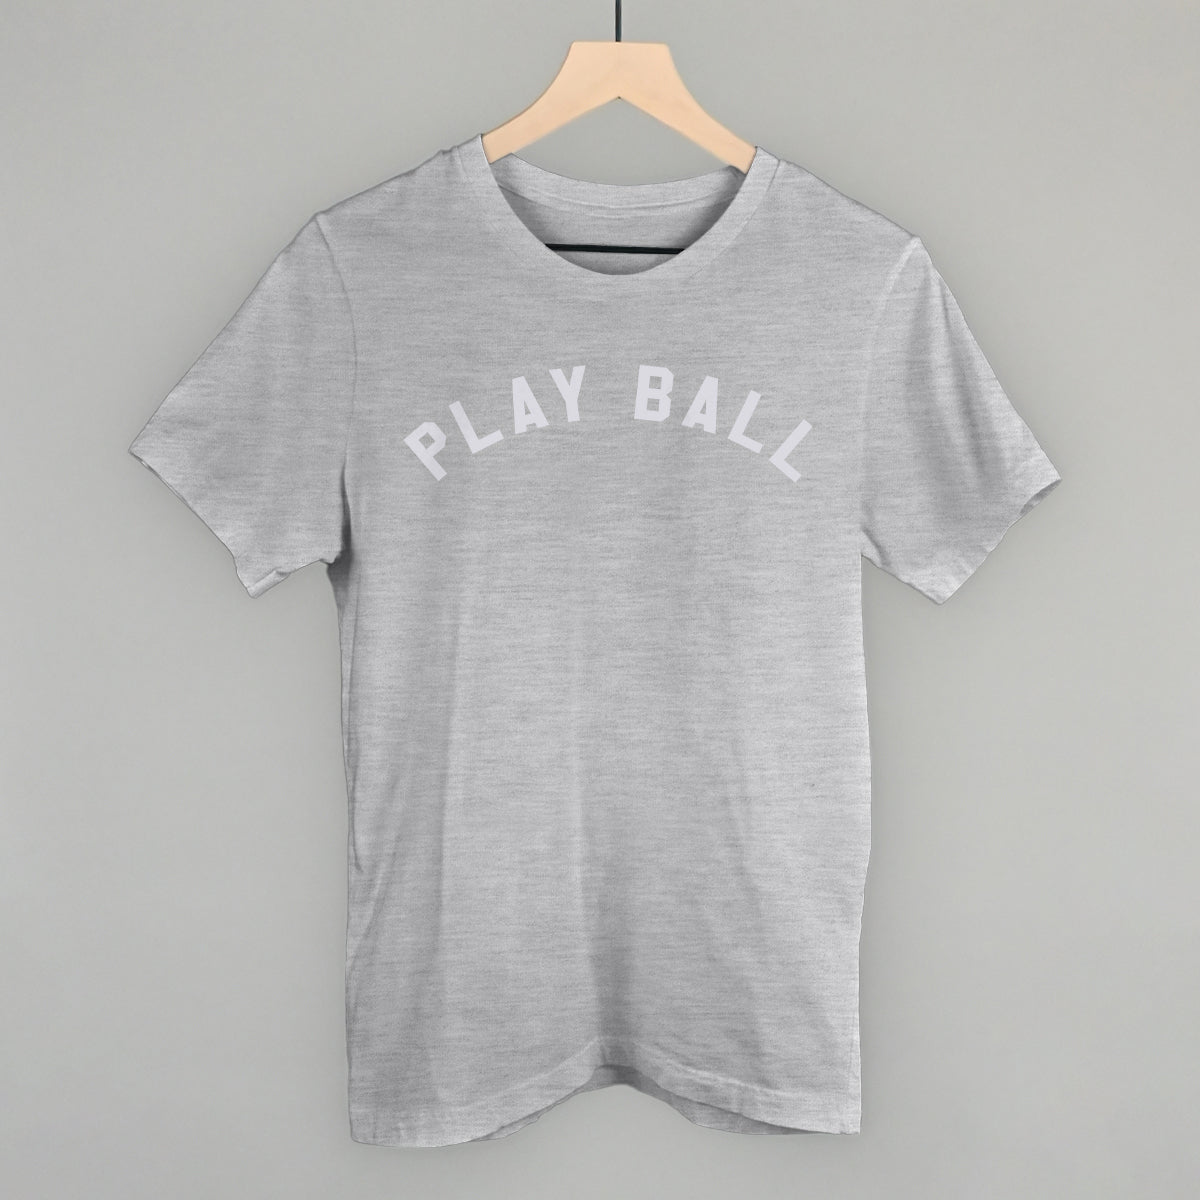 Play Ball Arc (White)